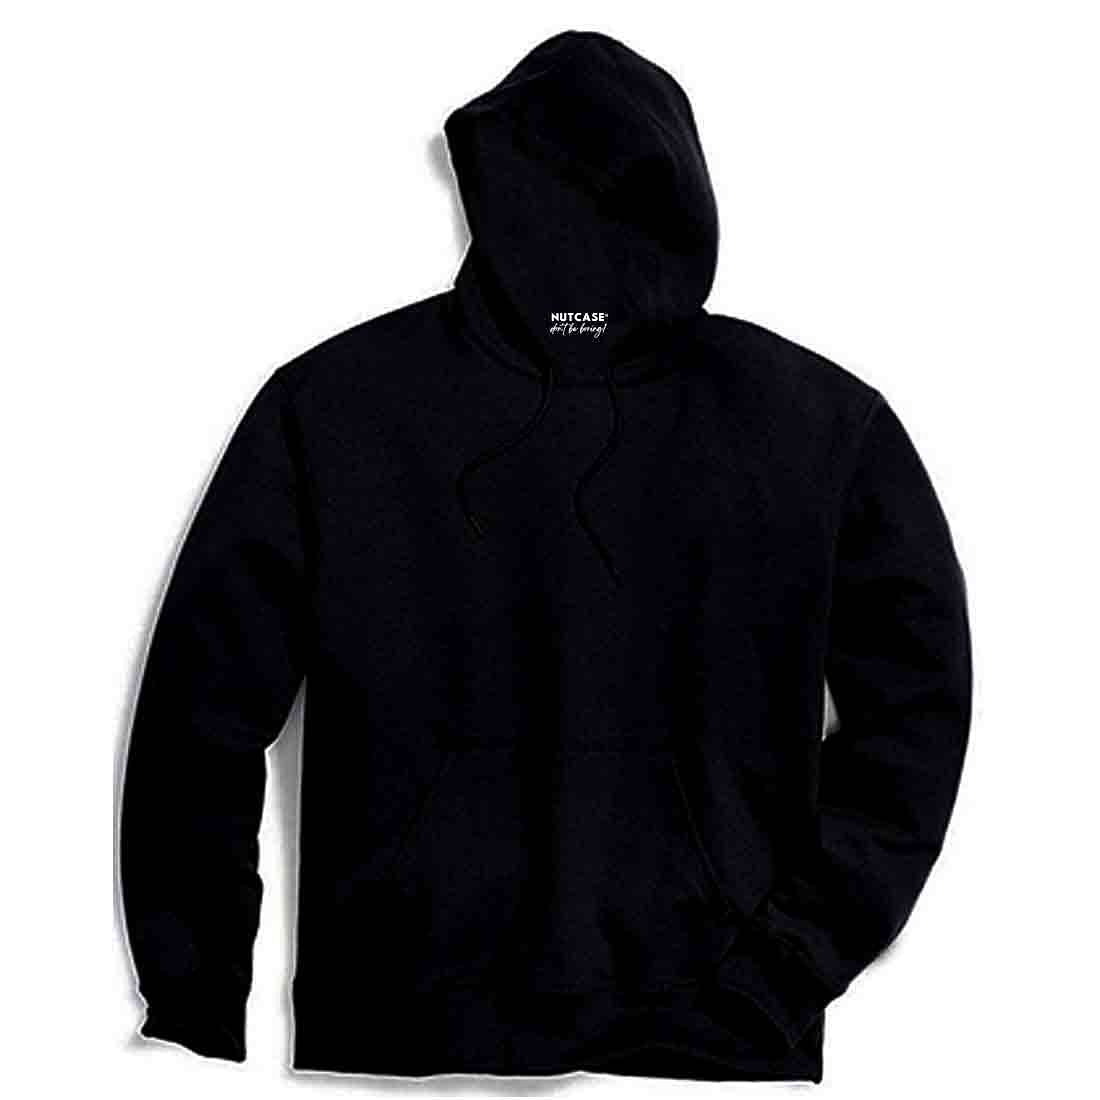 Black Hoodies - Buy Trendy Black Hoodies Online in India